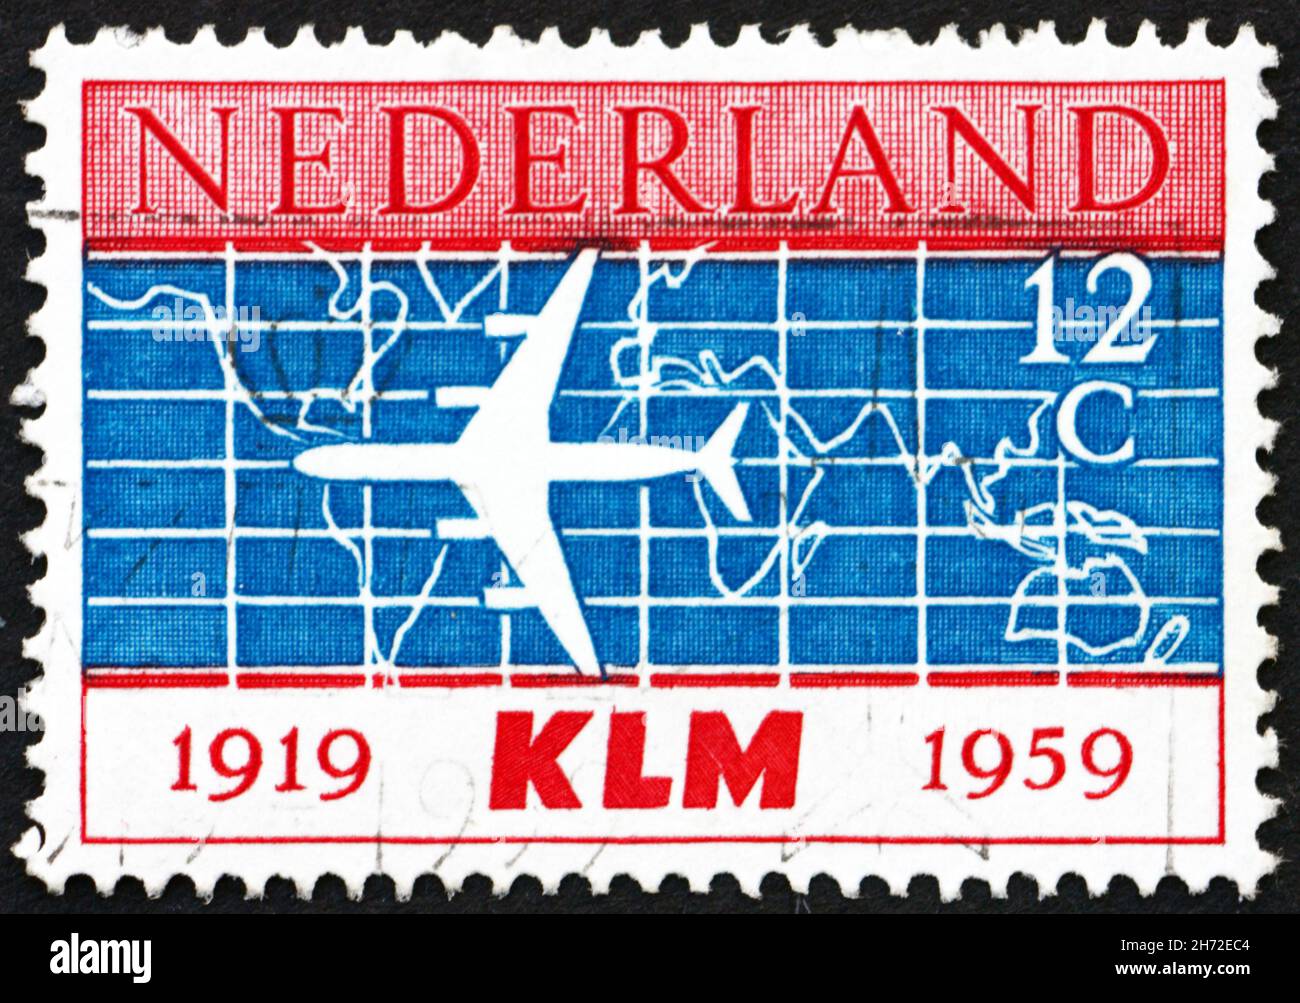 PAYS-BAS - VERS 1959 : un timbre imprimé aux pays-Bas montre Douglas DC-8 et la carte du monde, 40e anniversaire de la fondation de KLM, Royal Dutch ai Banque D'Images